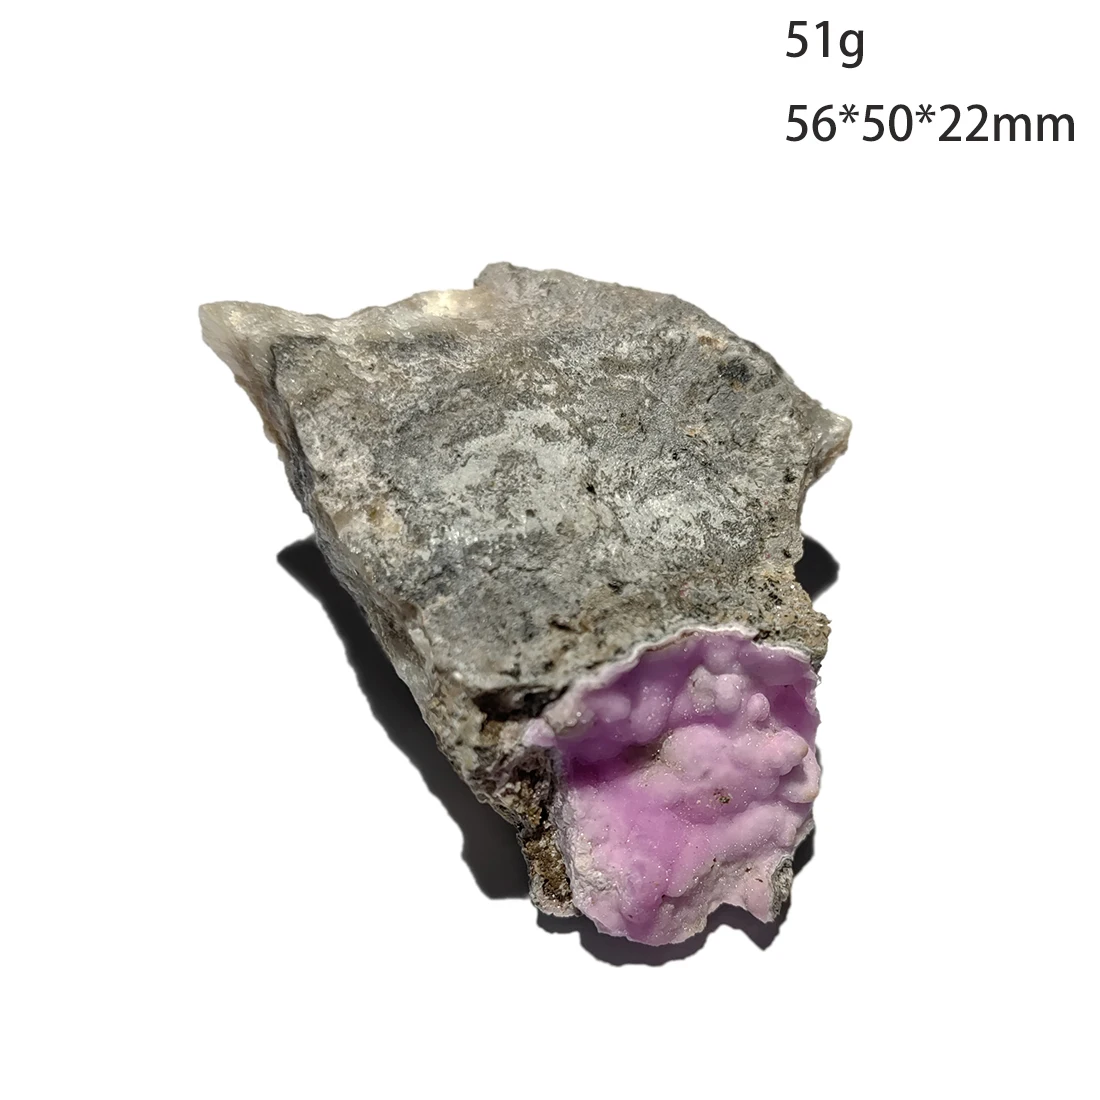 

C3-4B NEW! 100% Natural Red Aragonite Mineral Stones And Crystals Healing Crystals Form Yunnan Province China